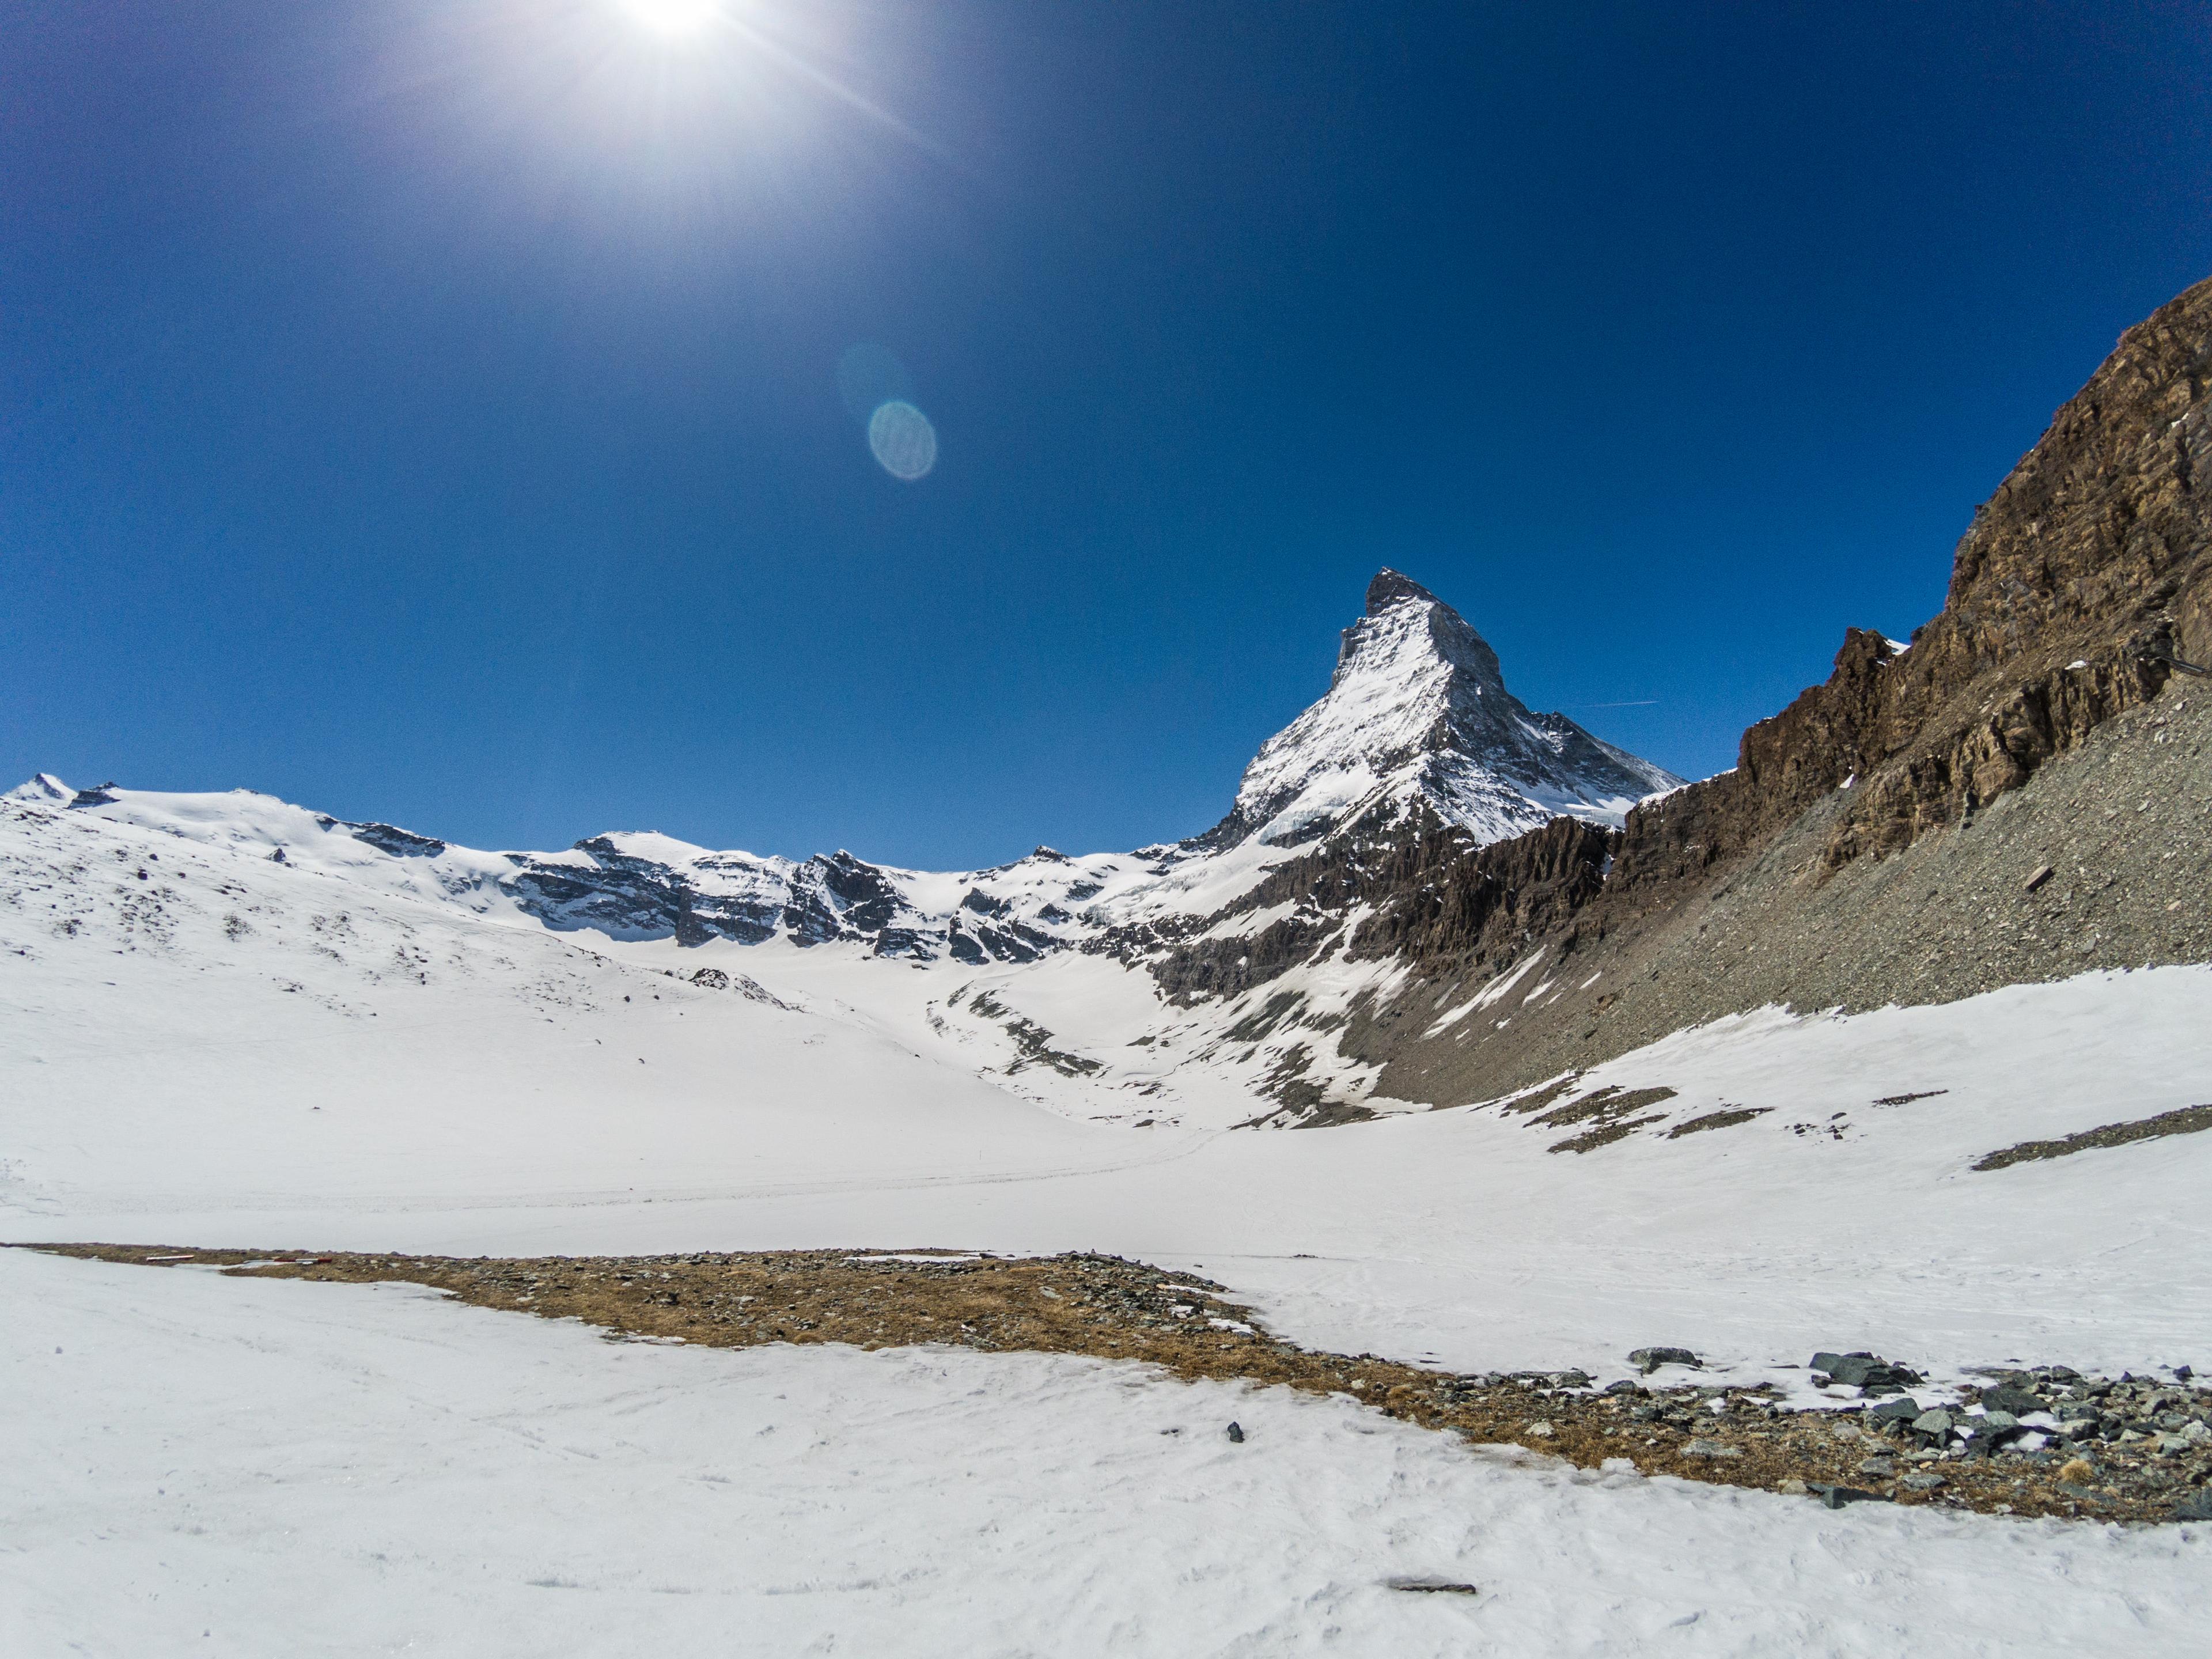 A view of Matterhorn from Schwarzsee